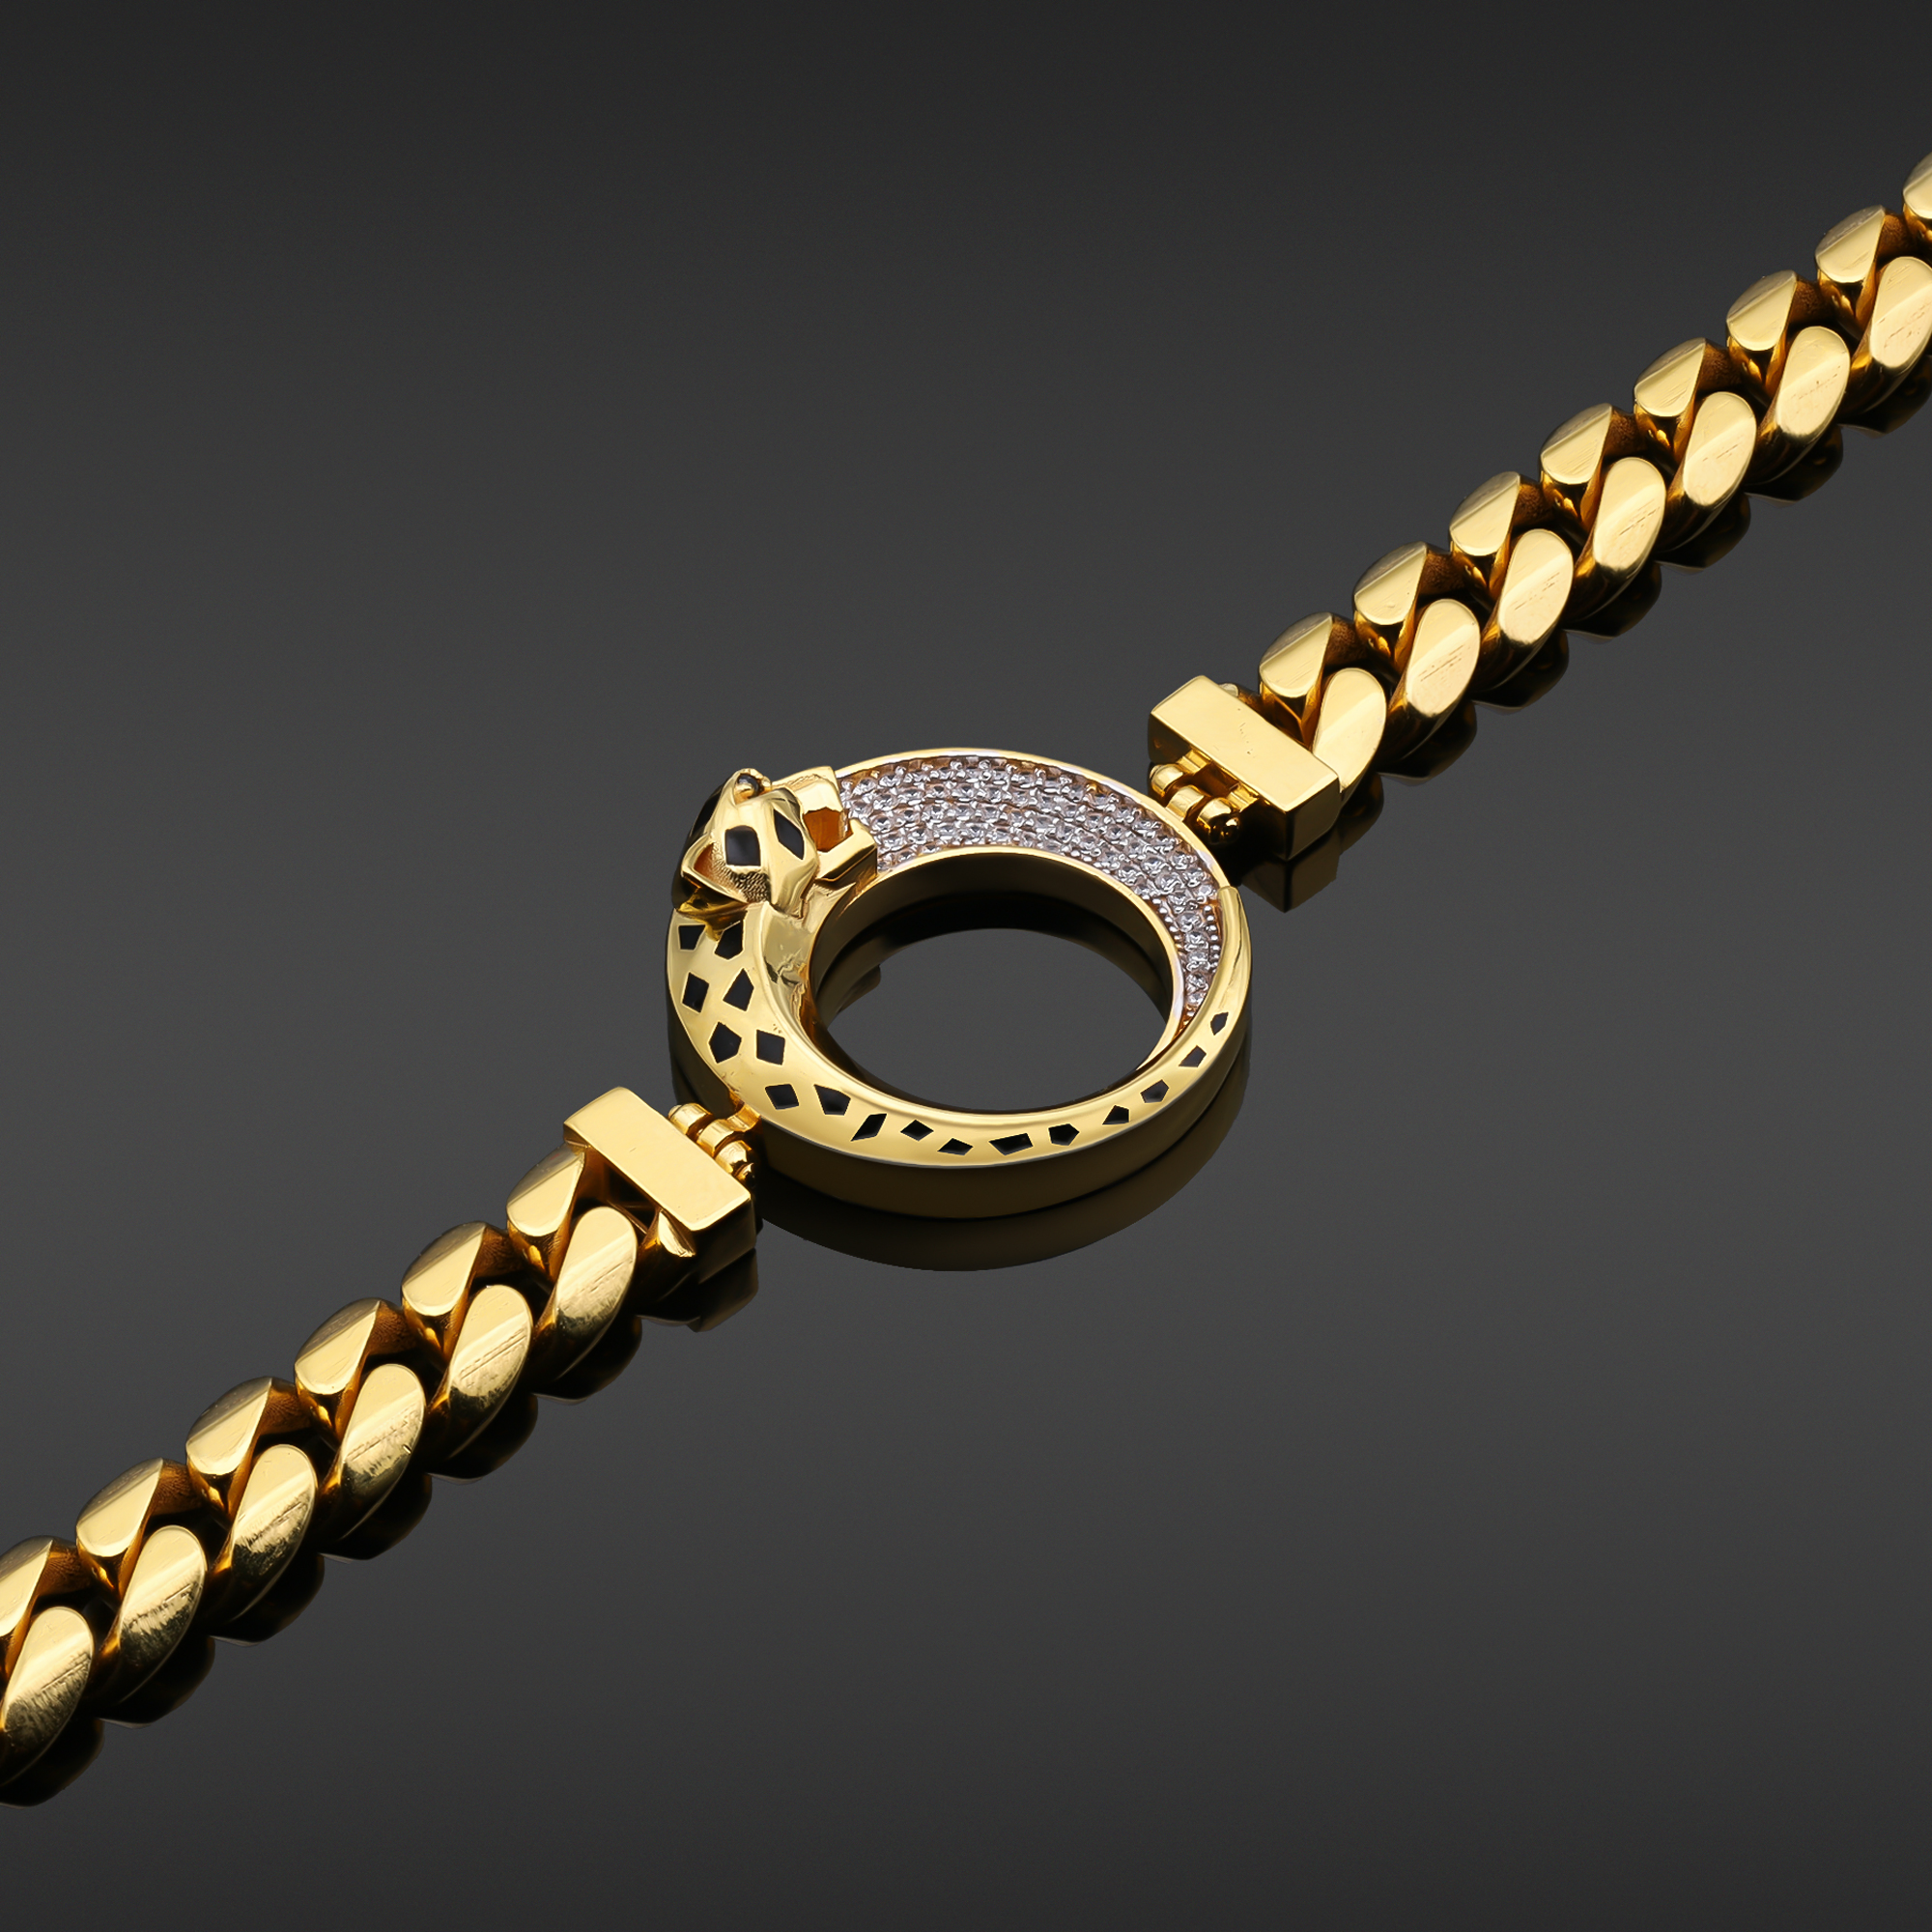 Ganesha Bracelet(22K Gold) - BrMb4618 - 22K Gold Men's Bracelet with holy  Ganesha all around the bracelet. (with extra security lock)